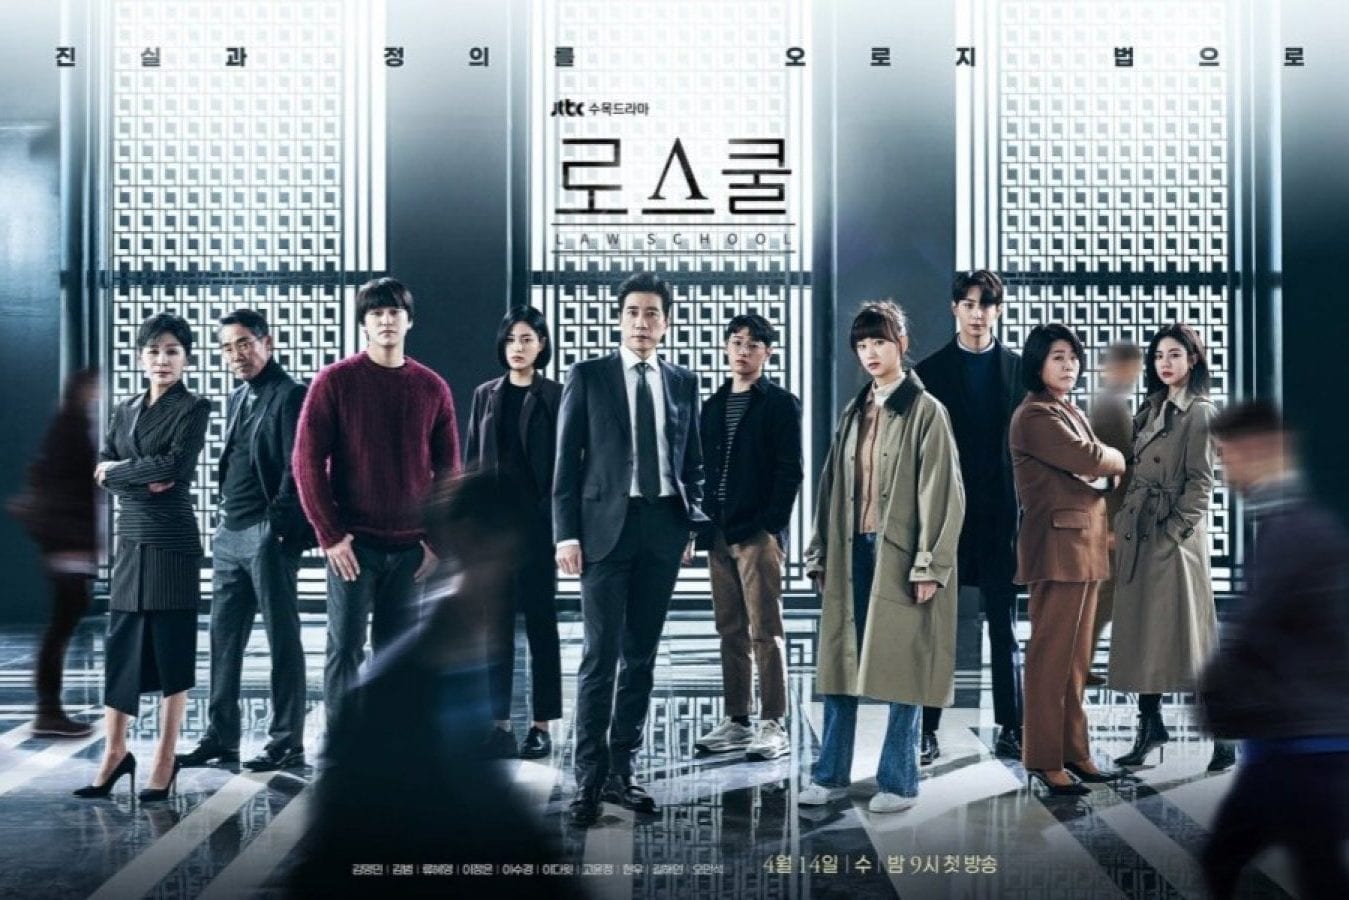 Law School K Drama Episode 5 Release Date.